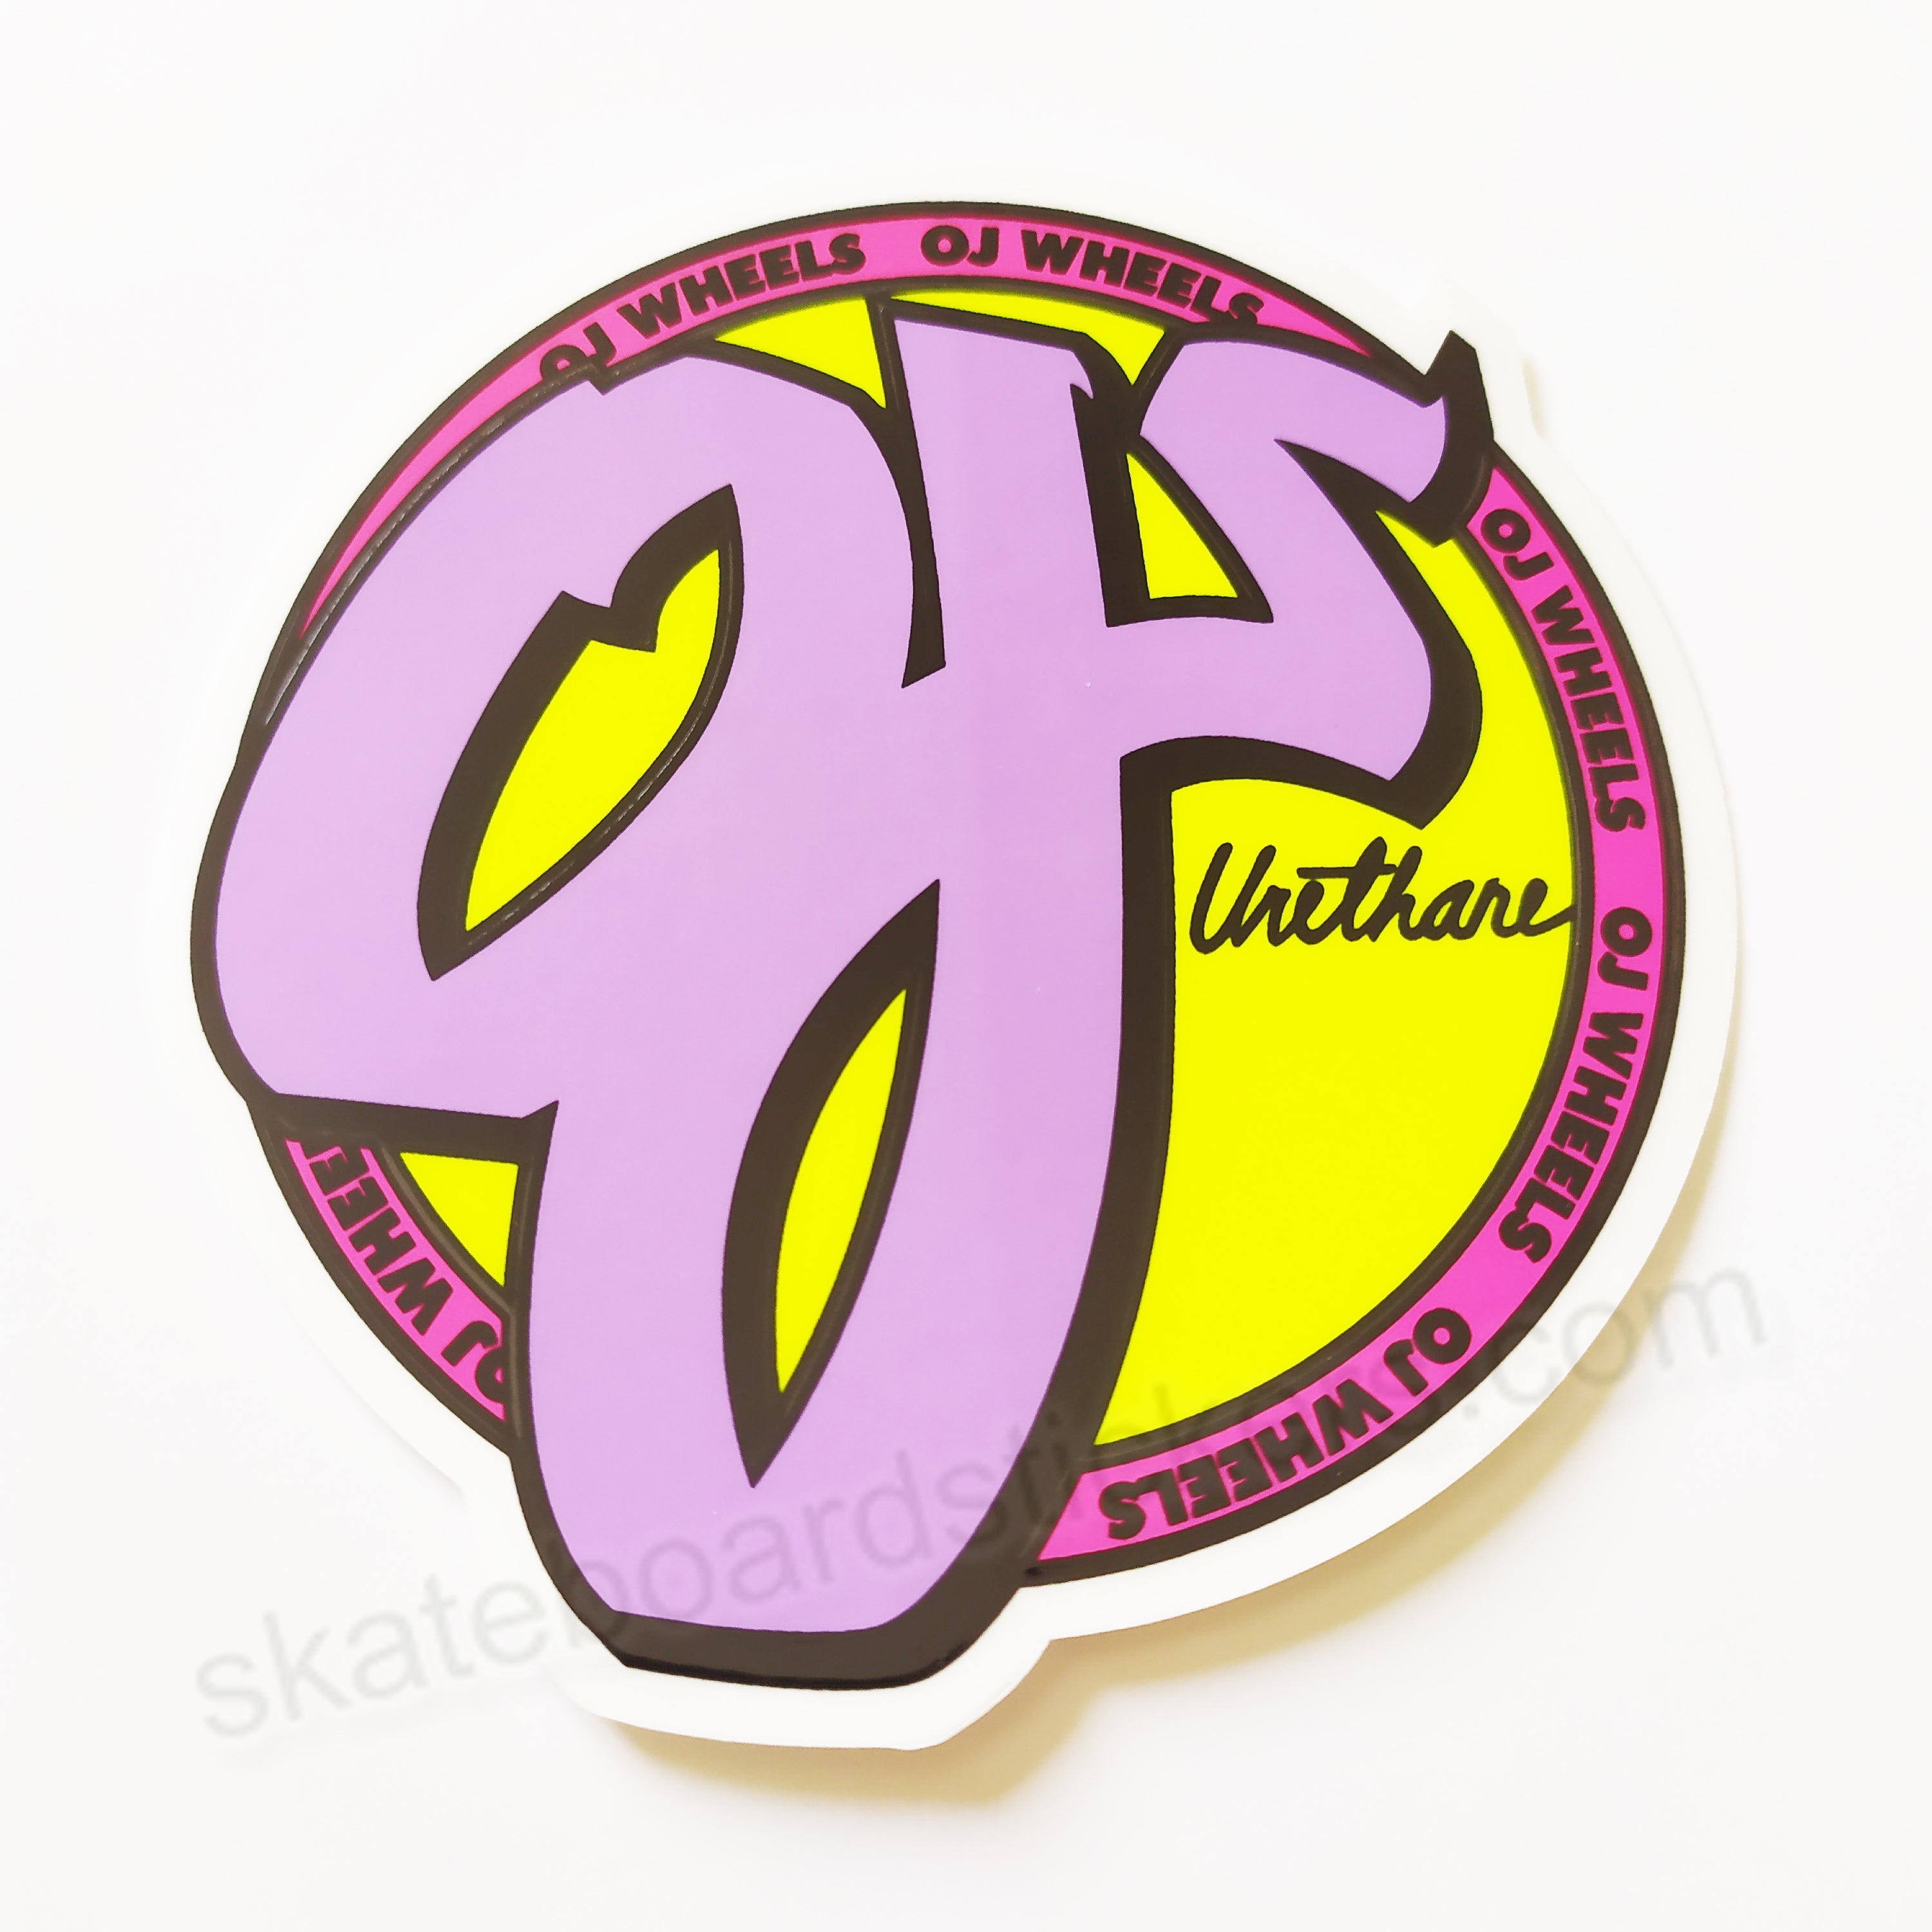 OJ Wheels - Purple/Yellow Skateboard Sticker - 8cm across approx - SkateboardStickers.com